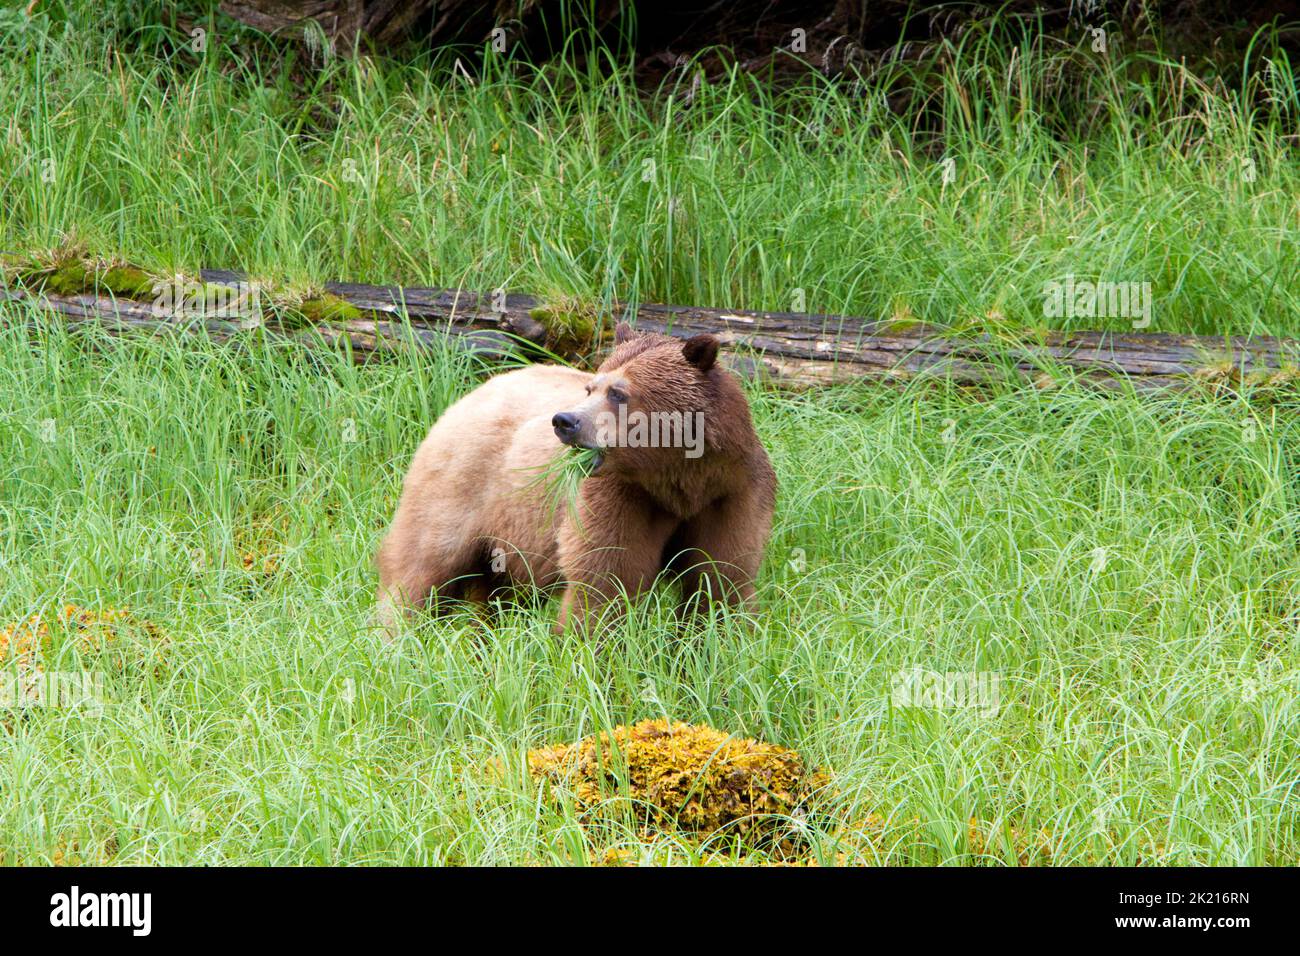 Grizzly Bear (Ursus arctos horribilis) si nutre di erba lungo le rive del Khutzeymateen insenatura a nord del Principe Rupert, BC, Canada nel mese di luglio Foto Stock